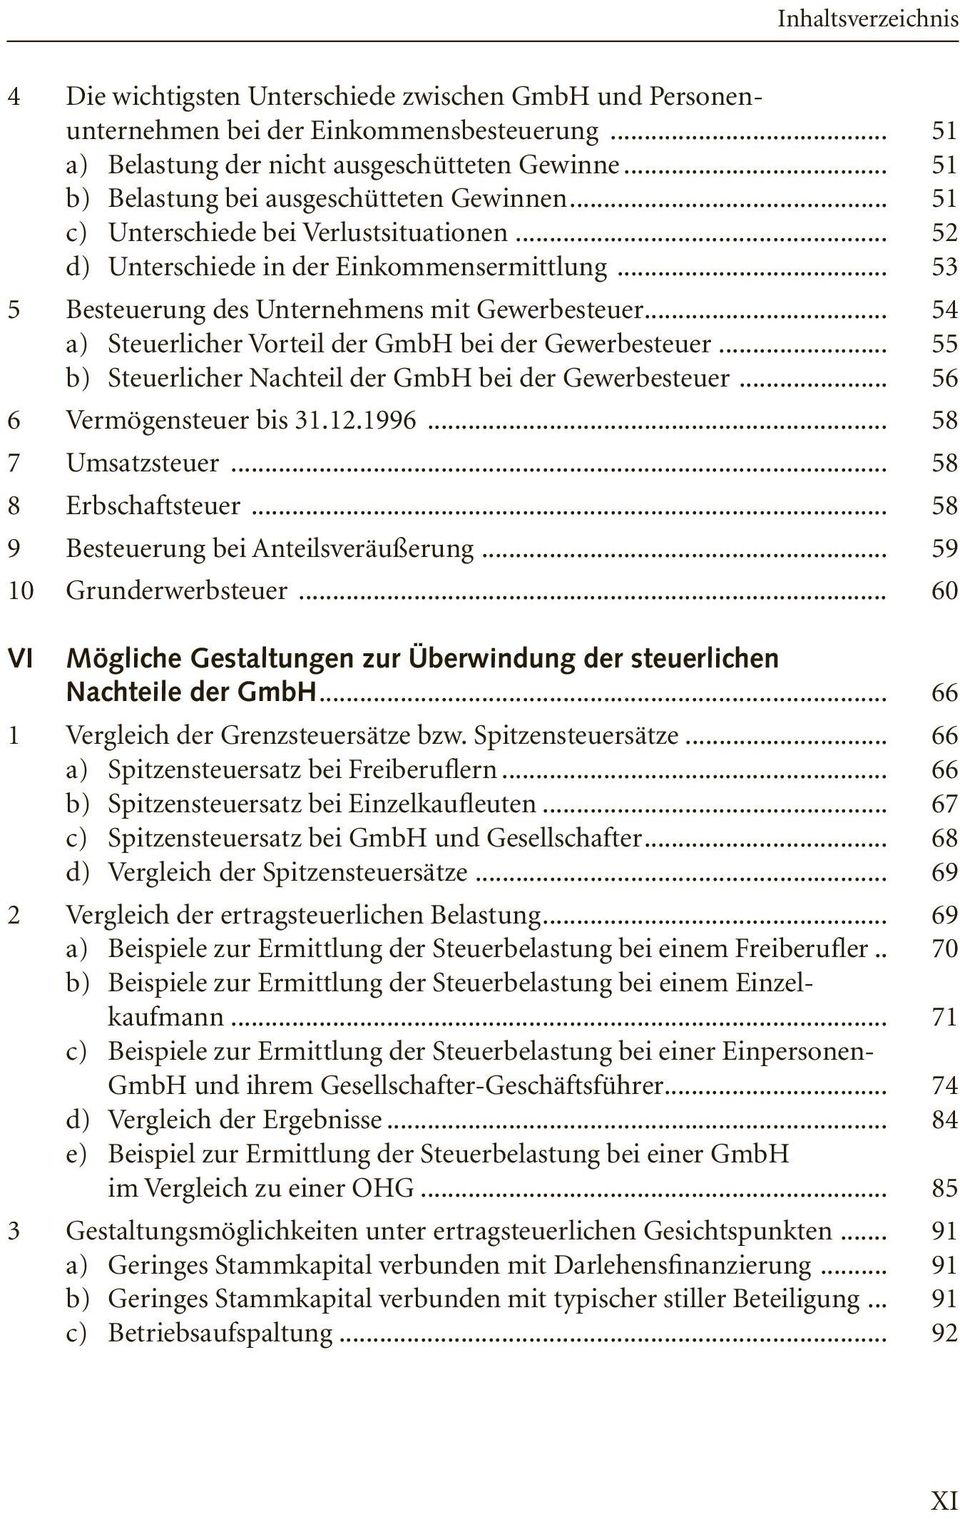 .. 54 a) Steuerlicher Vorteil der GmbH bei der Gewerbesteuer... 55 b) Steuerlicher Nachteil der GmbH bei der Gewerbesteuer... 56 6 Vermögensteuer bis 31.12.1996... 58 7 Umsatzsteuer.